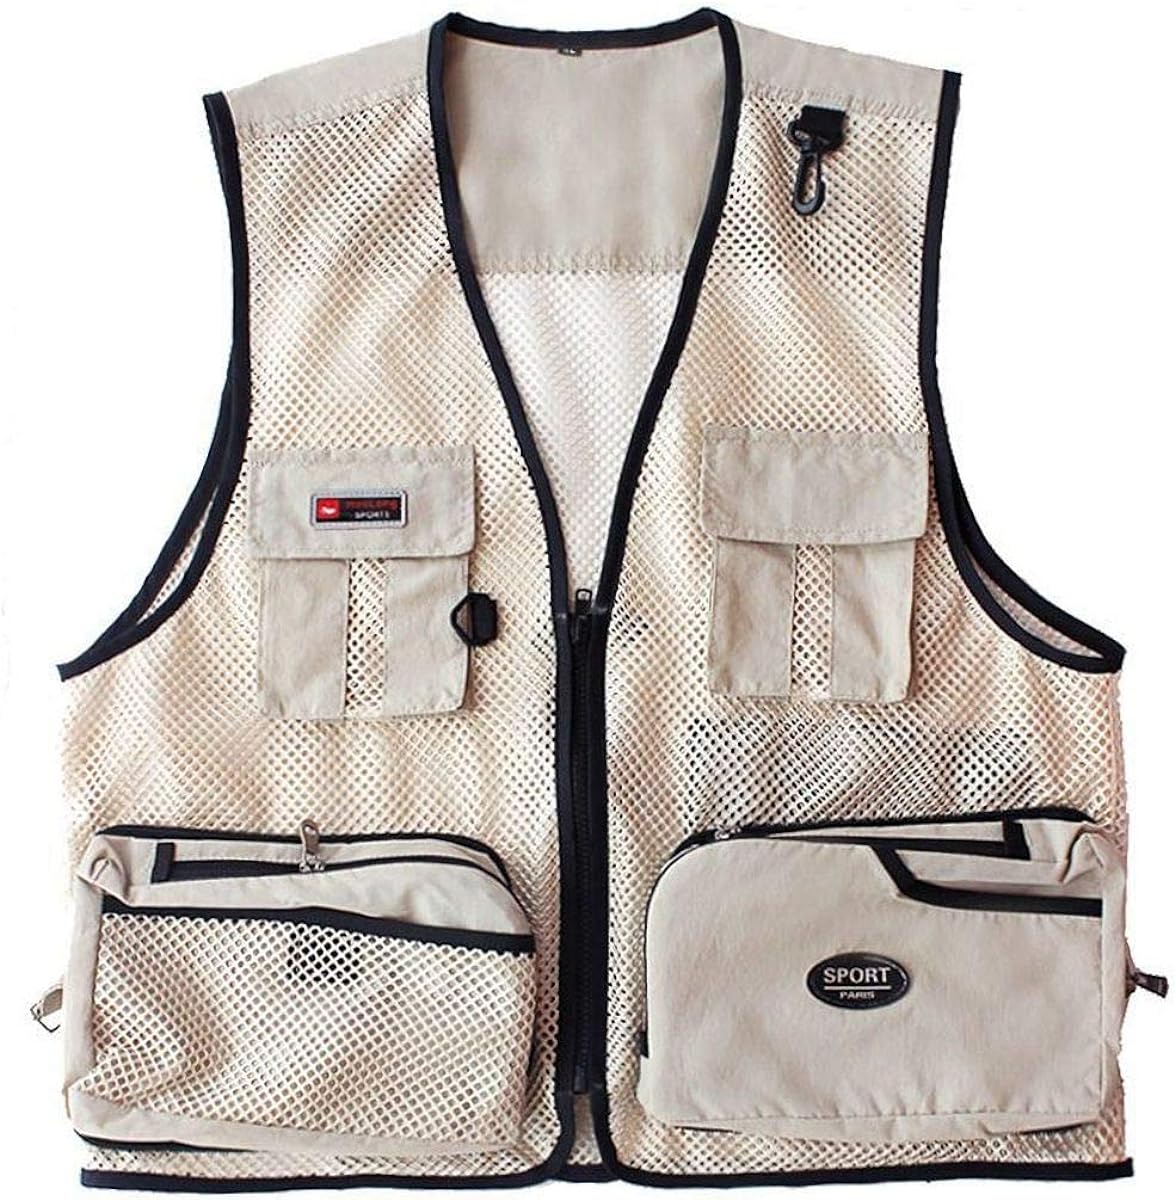 Waxaya Fly Fishing Vest Adjustable for Men and Women